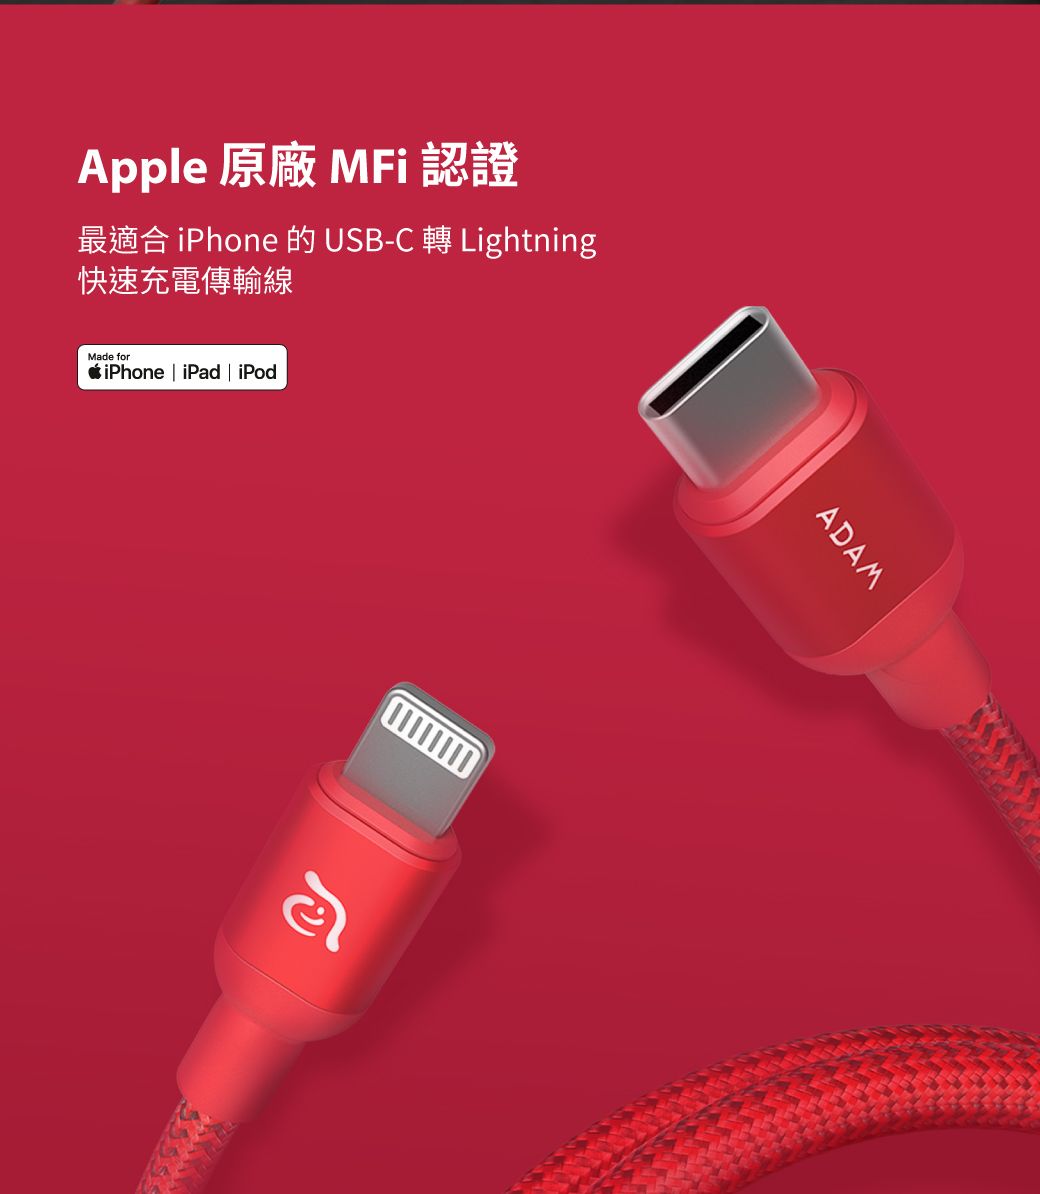 Apple最適合 iPhone 的USB-C  Lightning快速充電傳輸線iPhone iPd  iPodMade foraADAM